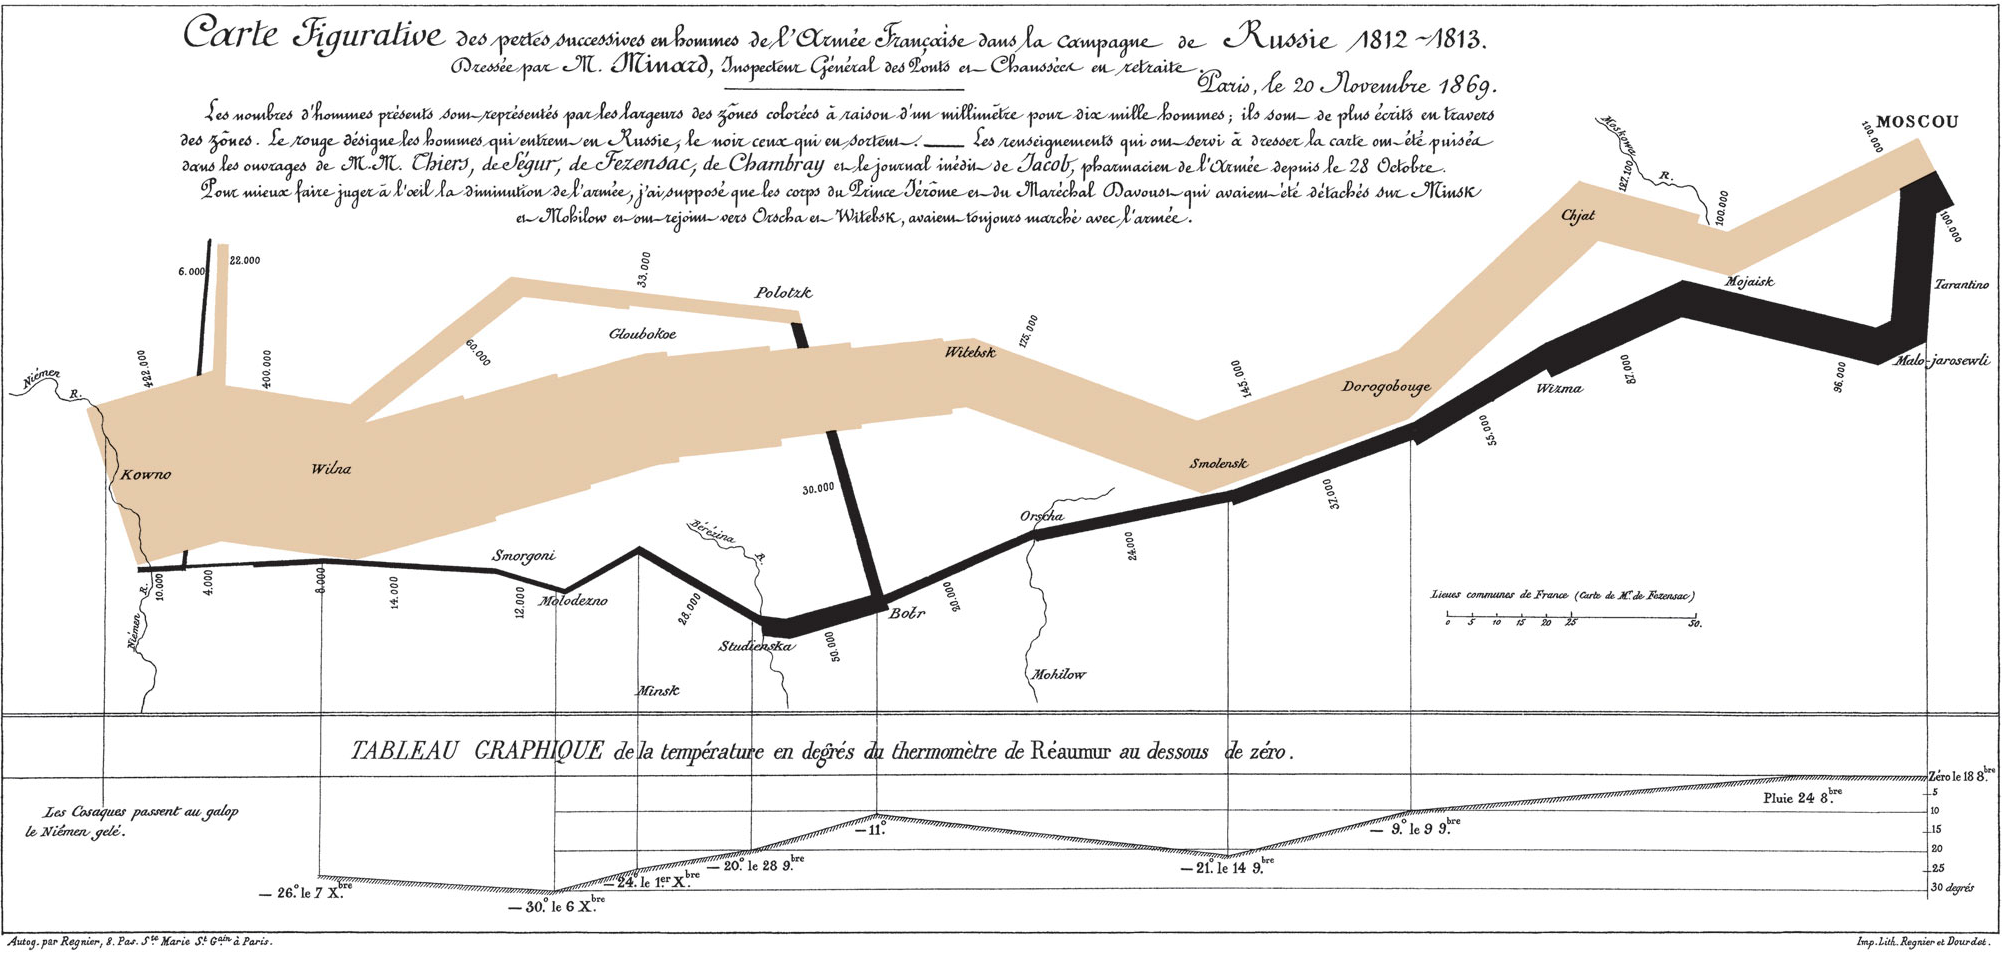 Carte figurative des pertes successives en hommes de l’Armée française dans la campagne de Russie en 1812–1813 (Charles Joseph Minard, 1869, domaine publique)